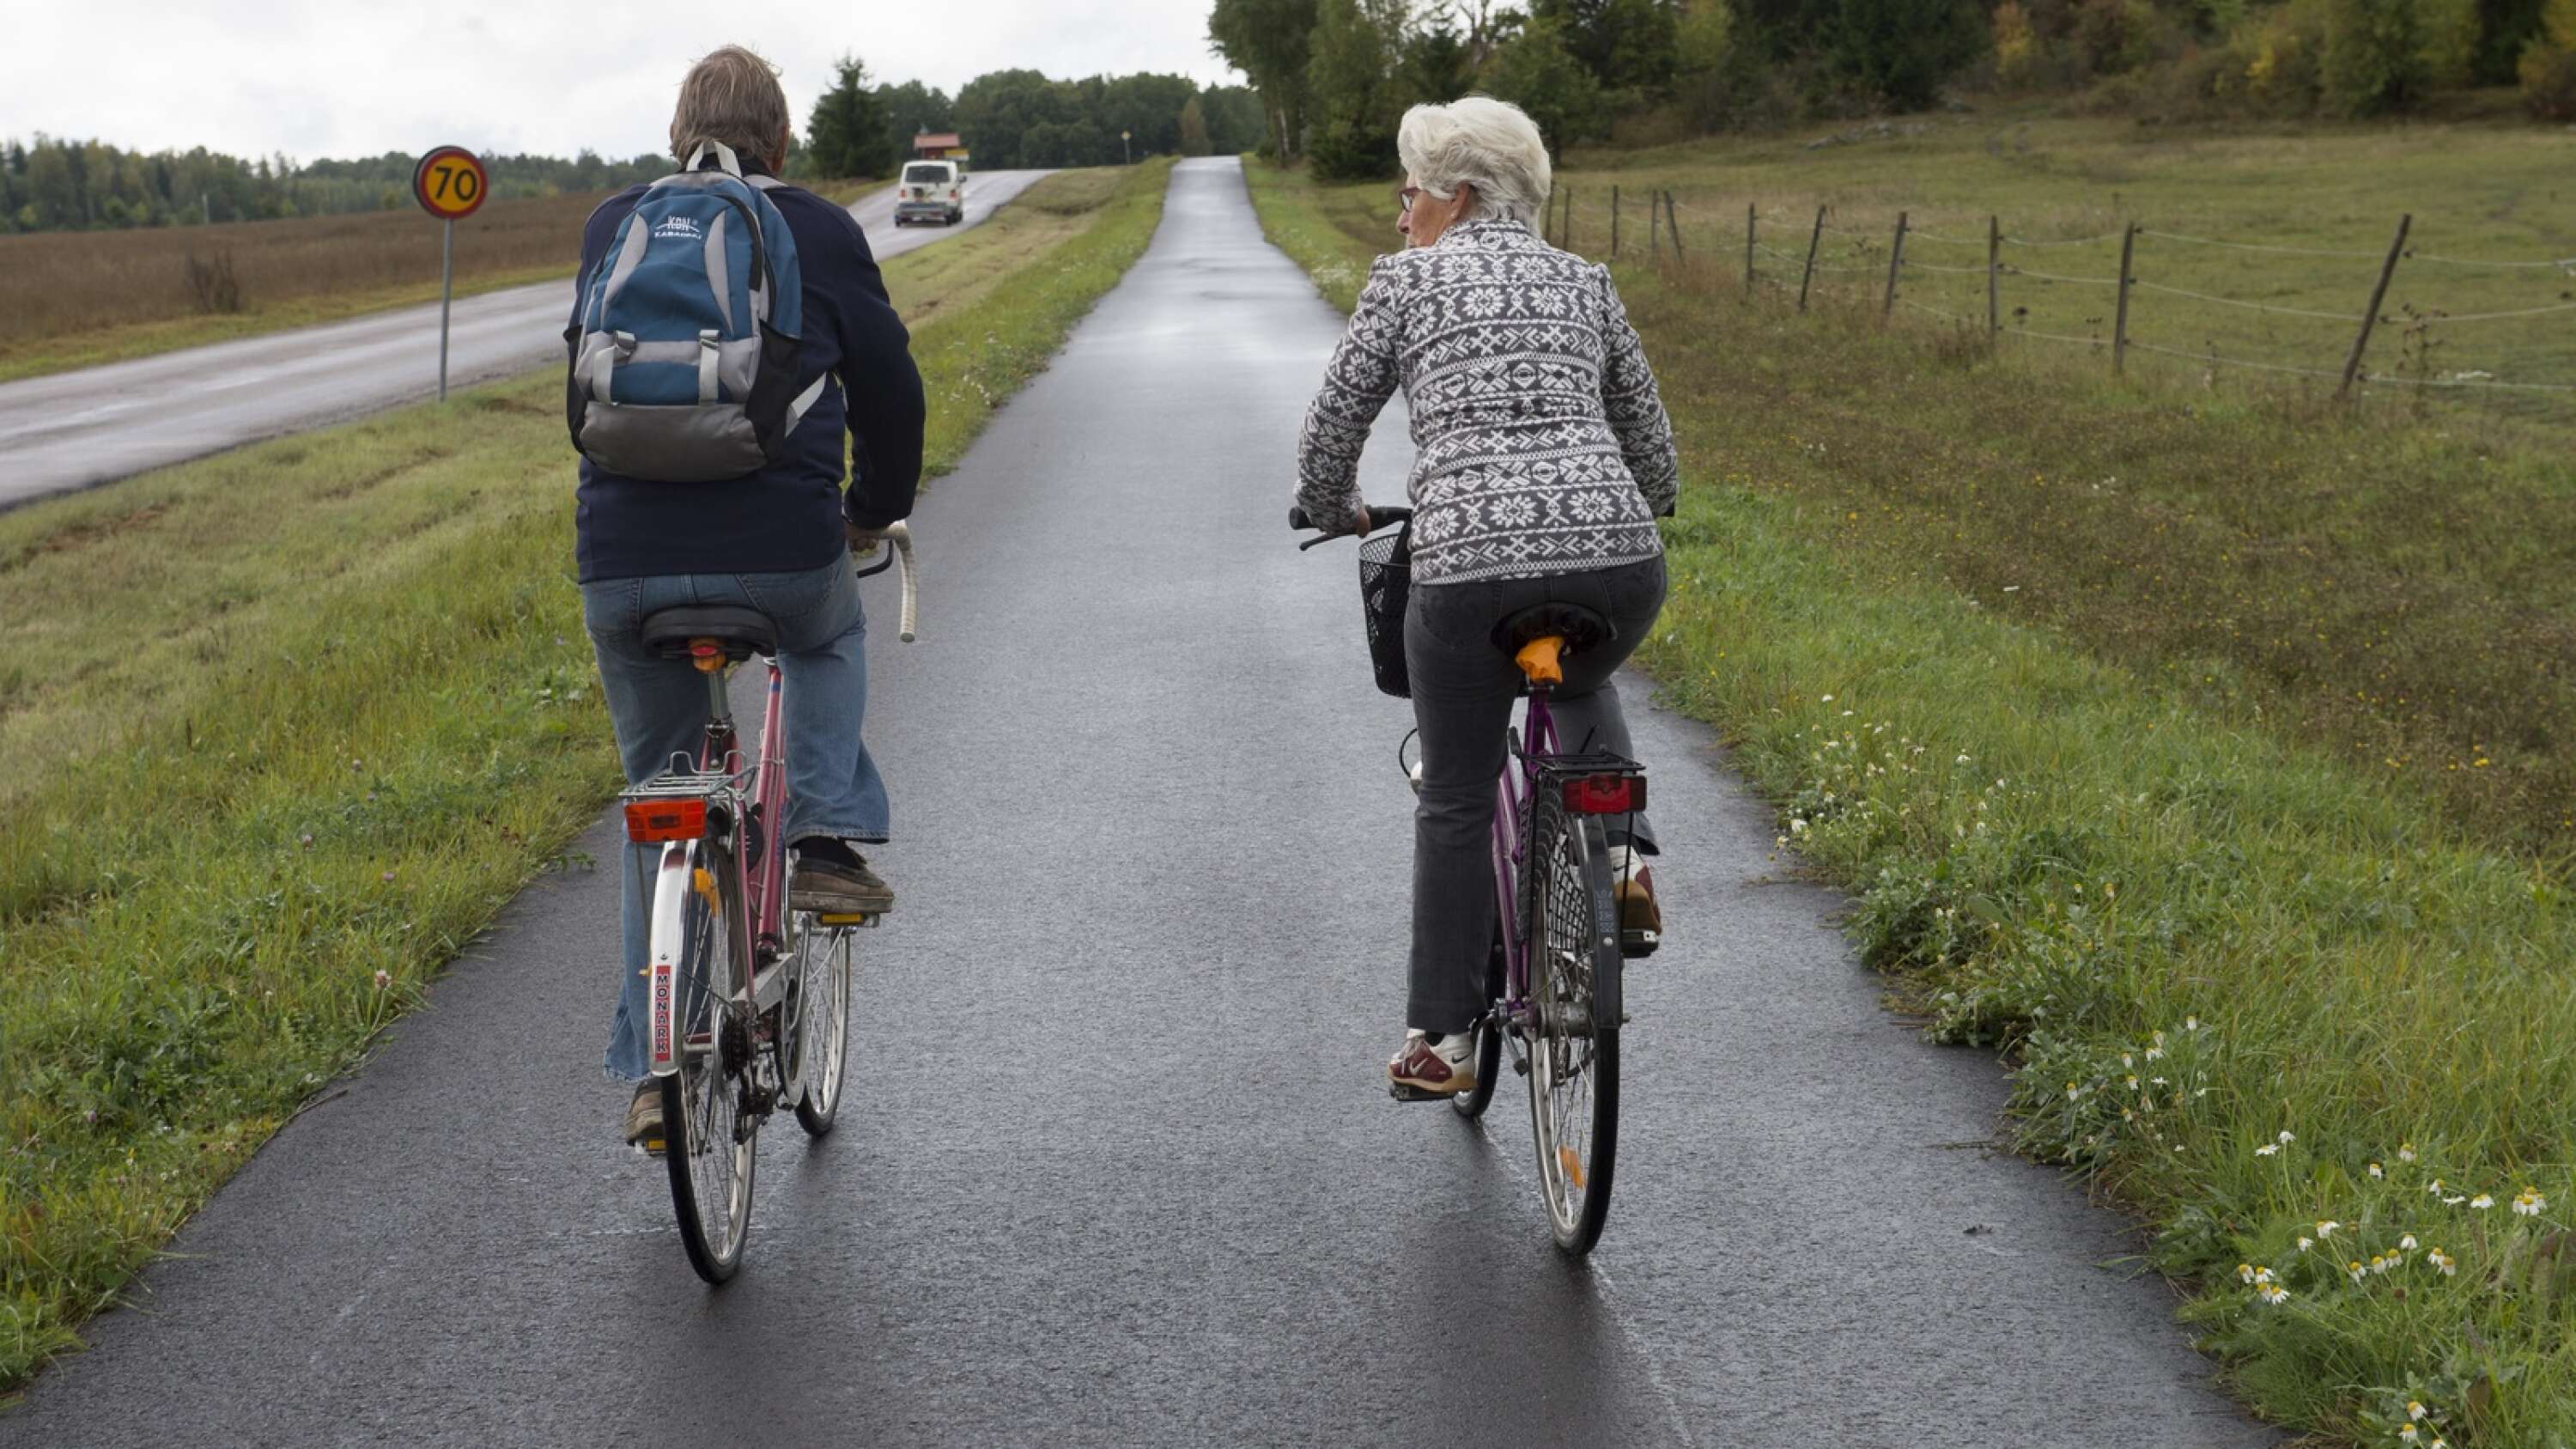 Débat : Le vélo devrait être une alternative envisageable dans les zones rurales